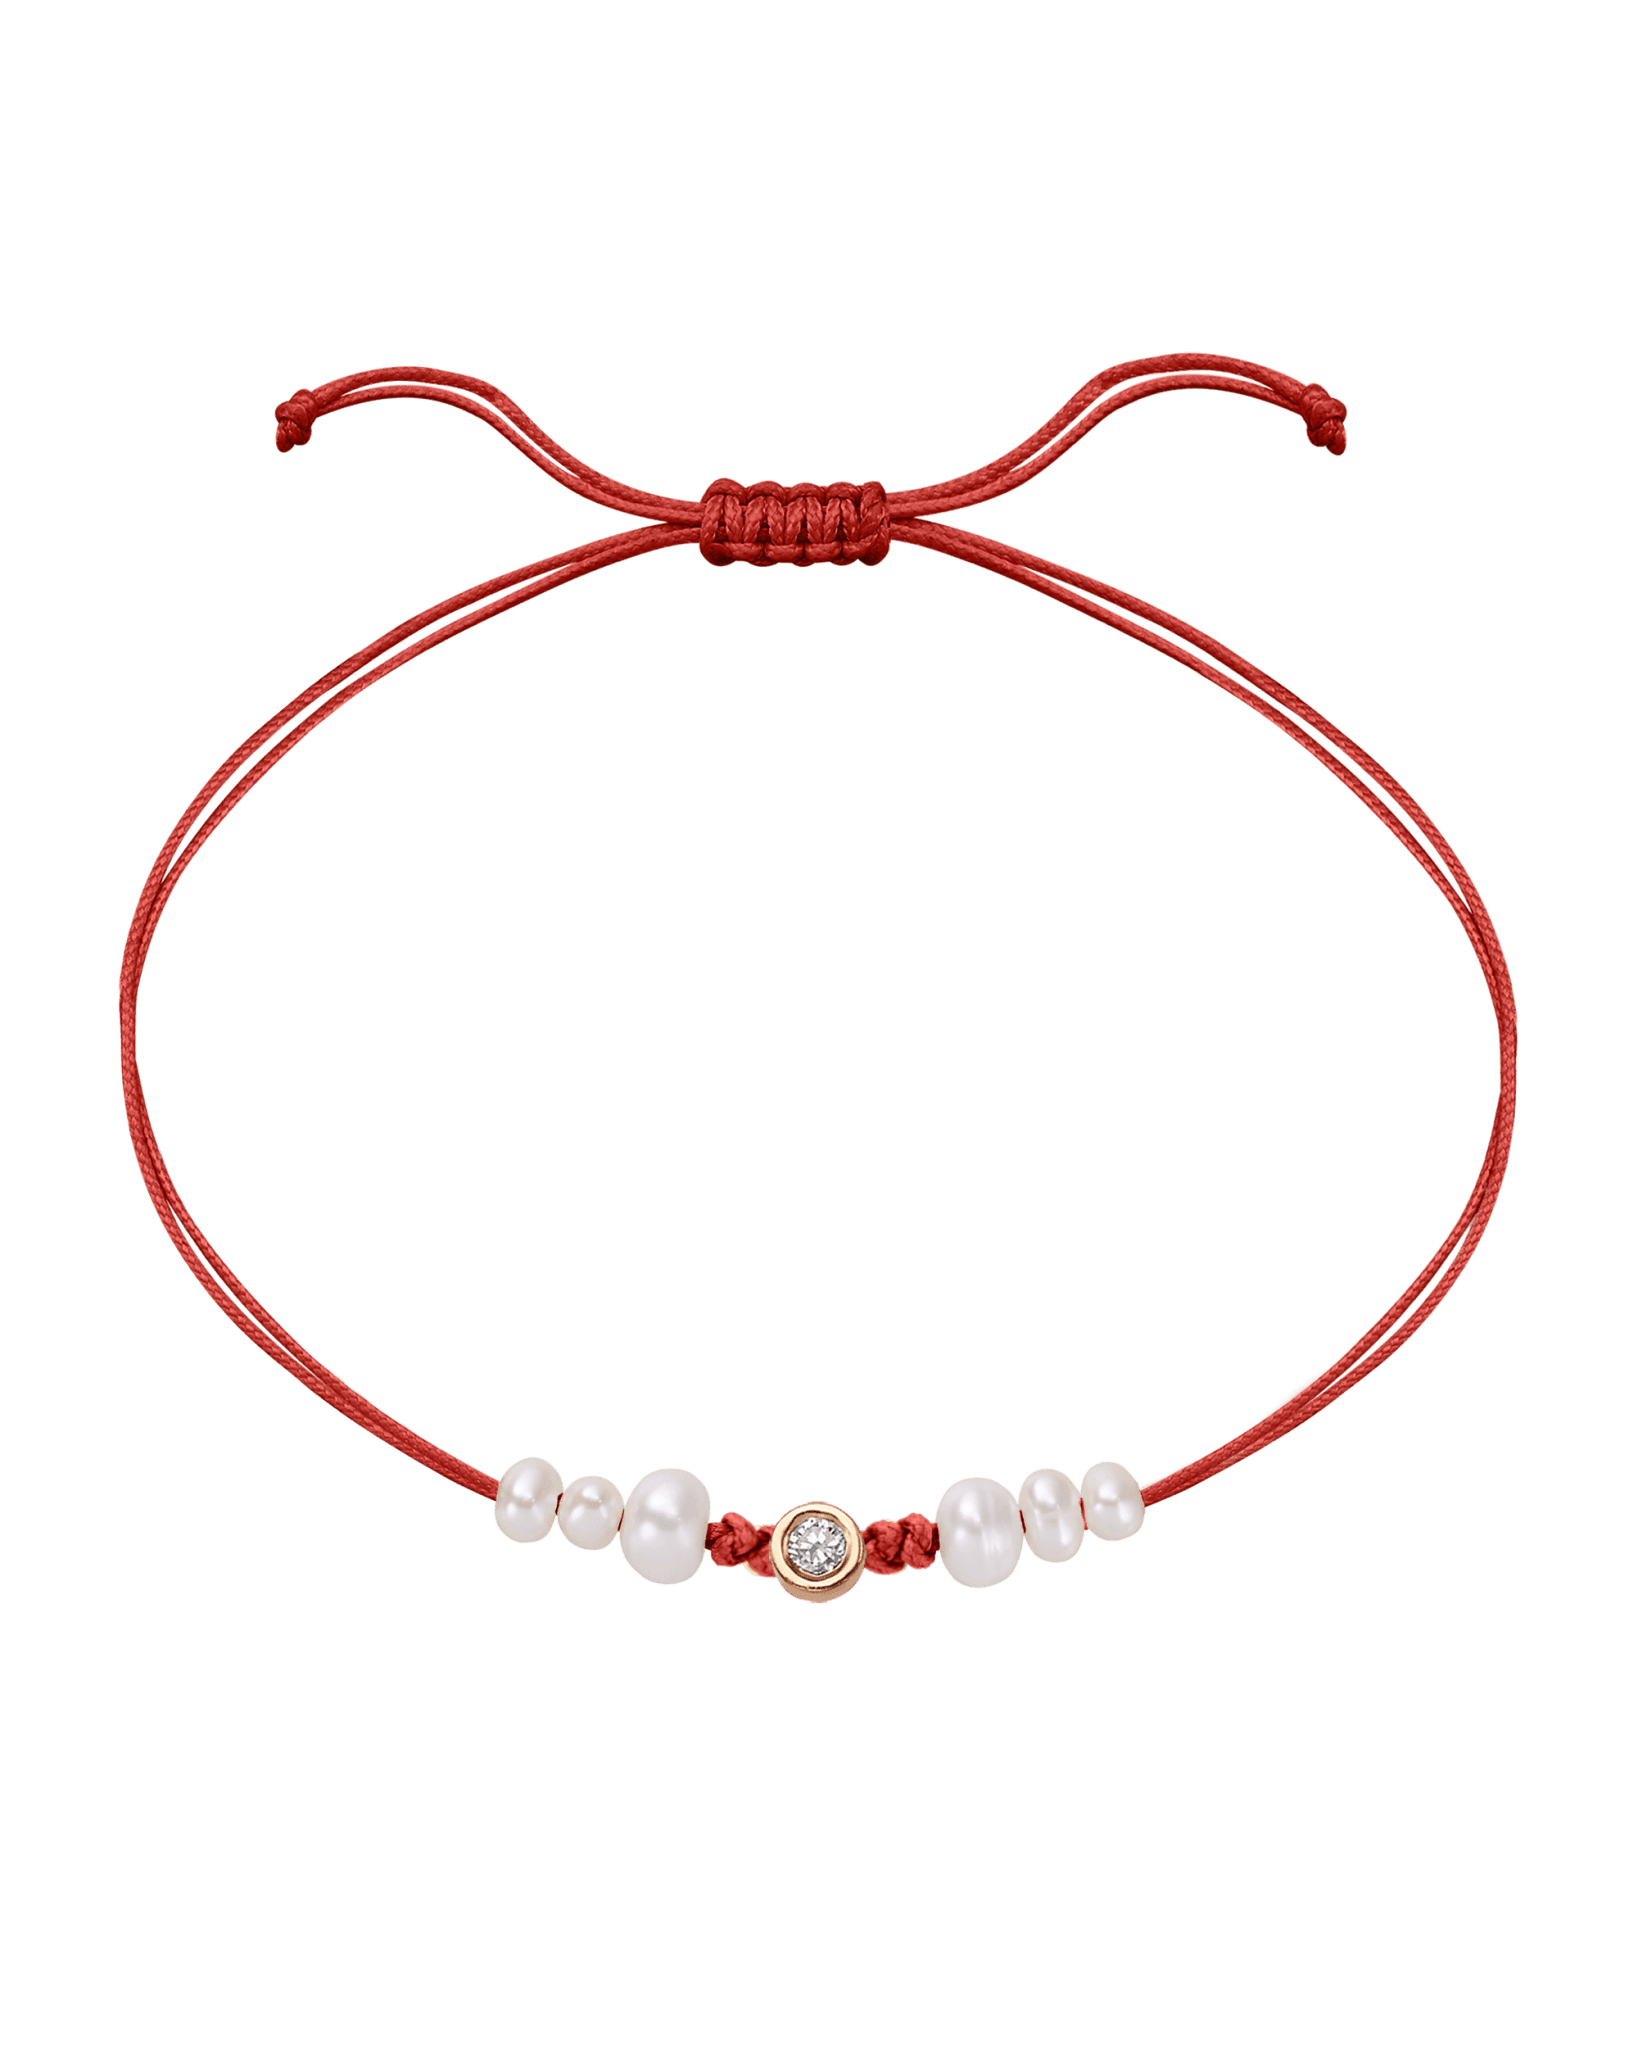 Six Natural Pearl String of Love Bracelet - 14K Rose Gold Bracelet 14K Solid Gold Red Medium: 0.04ct 